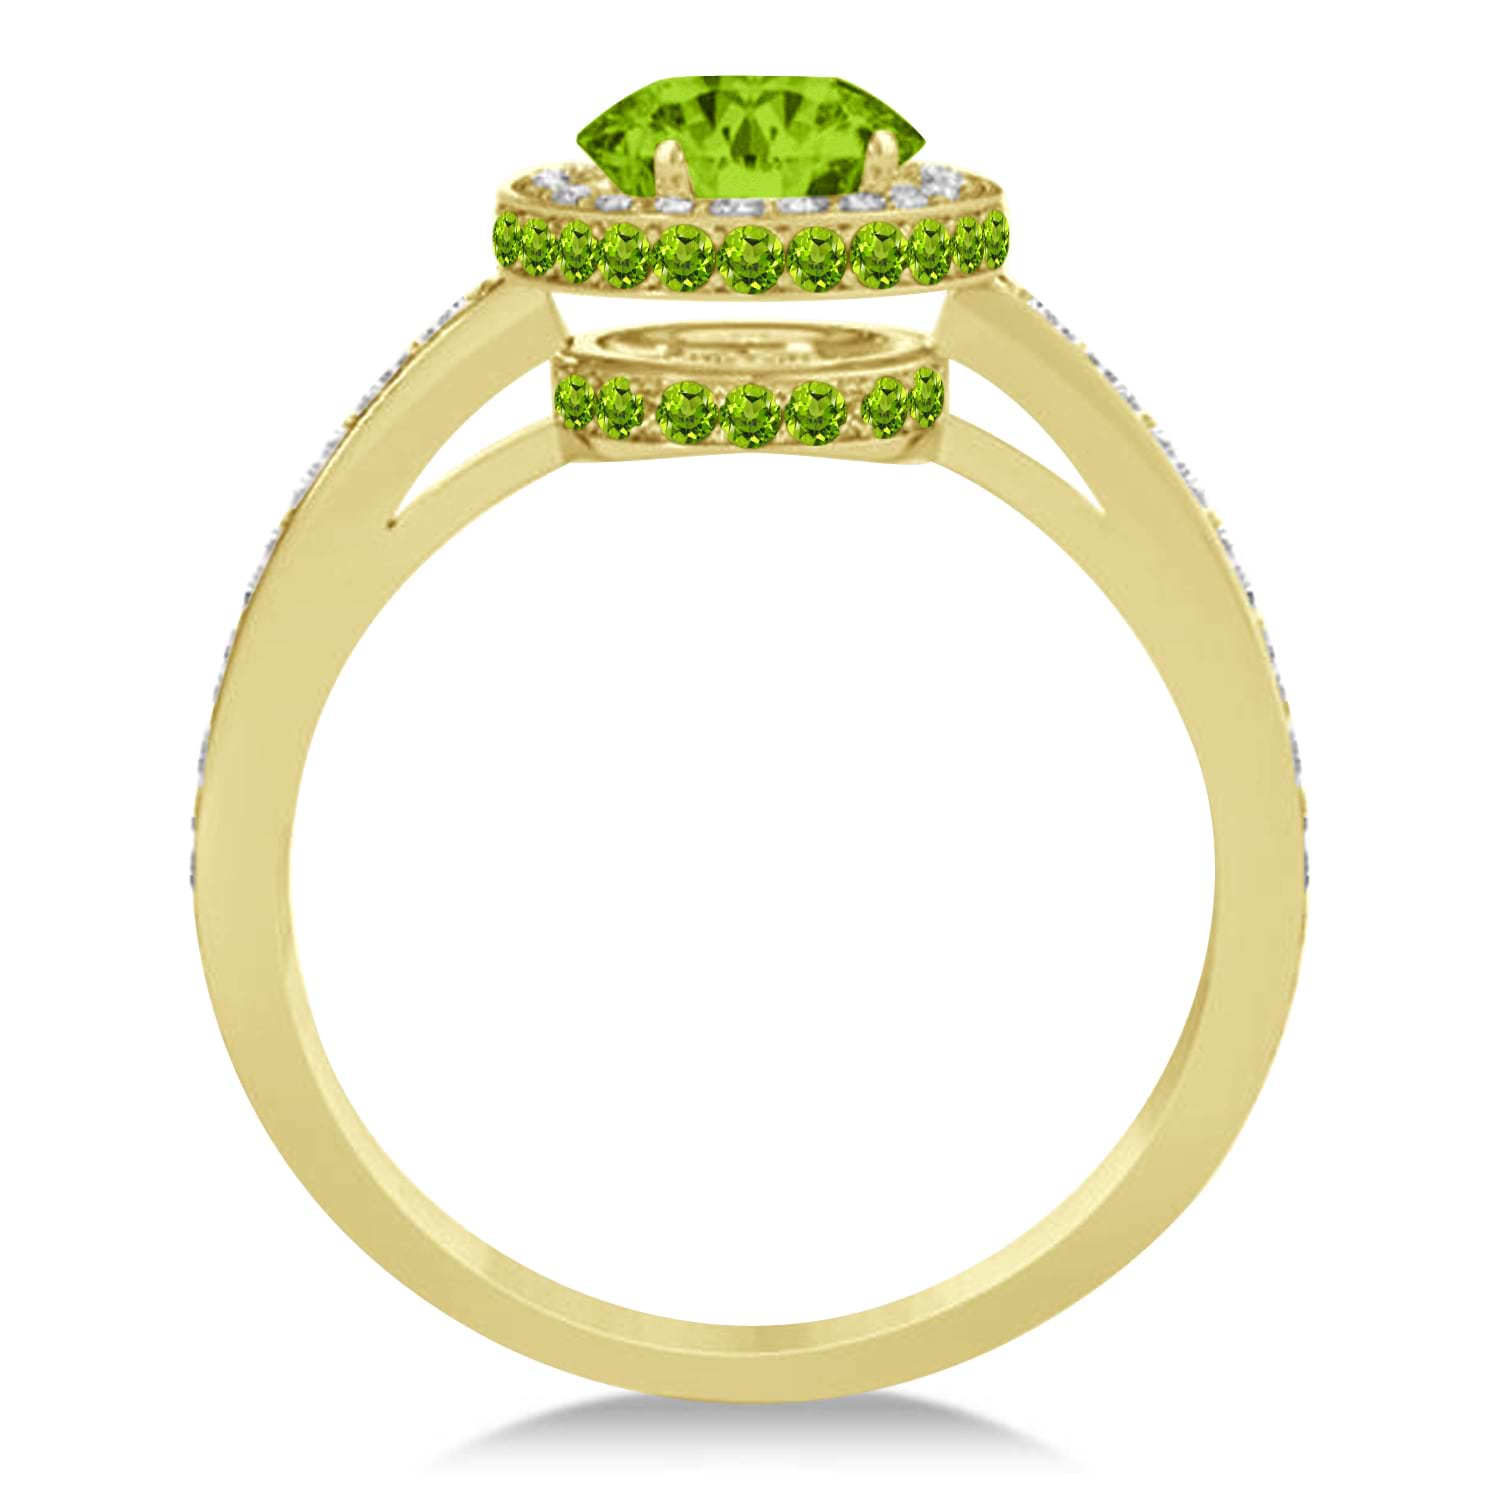 Oval Peridot & Diamond Halo Engagement Ring 14k Yellow Gold (1.85ct)